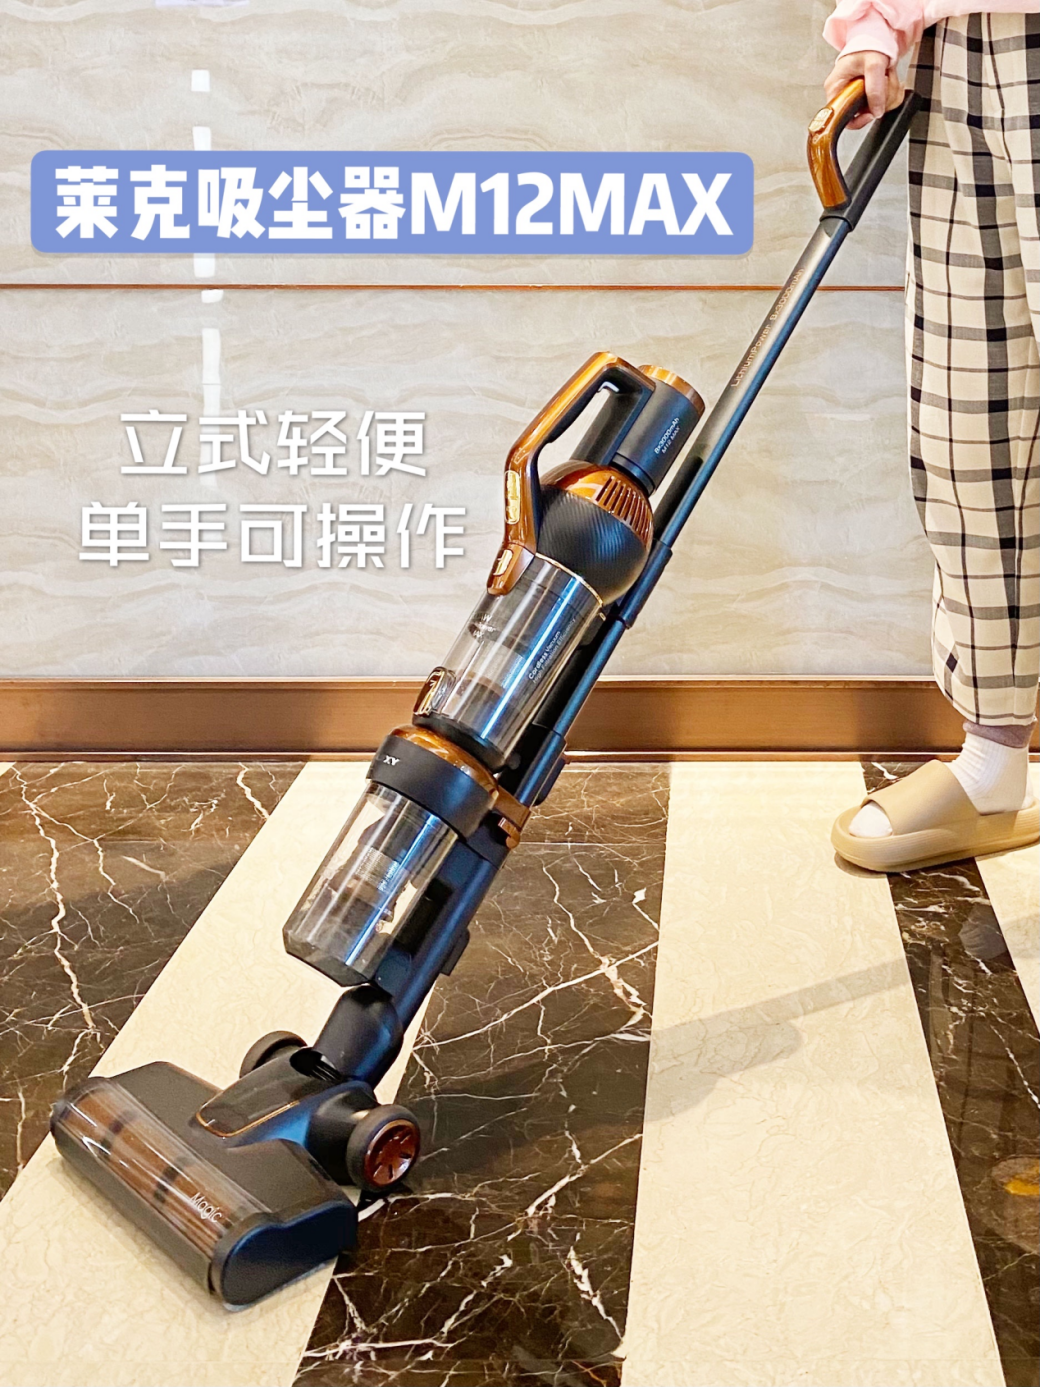 莱克M12 MAX吸尘器，缔造高效便利家居生活